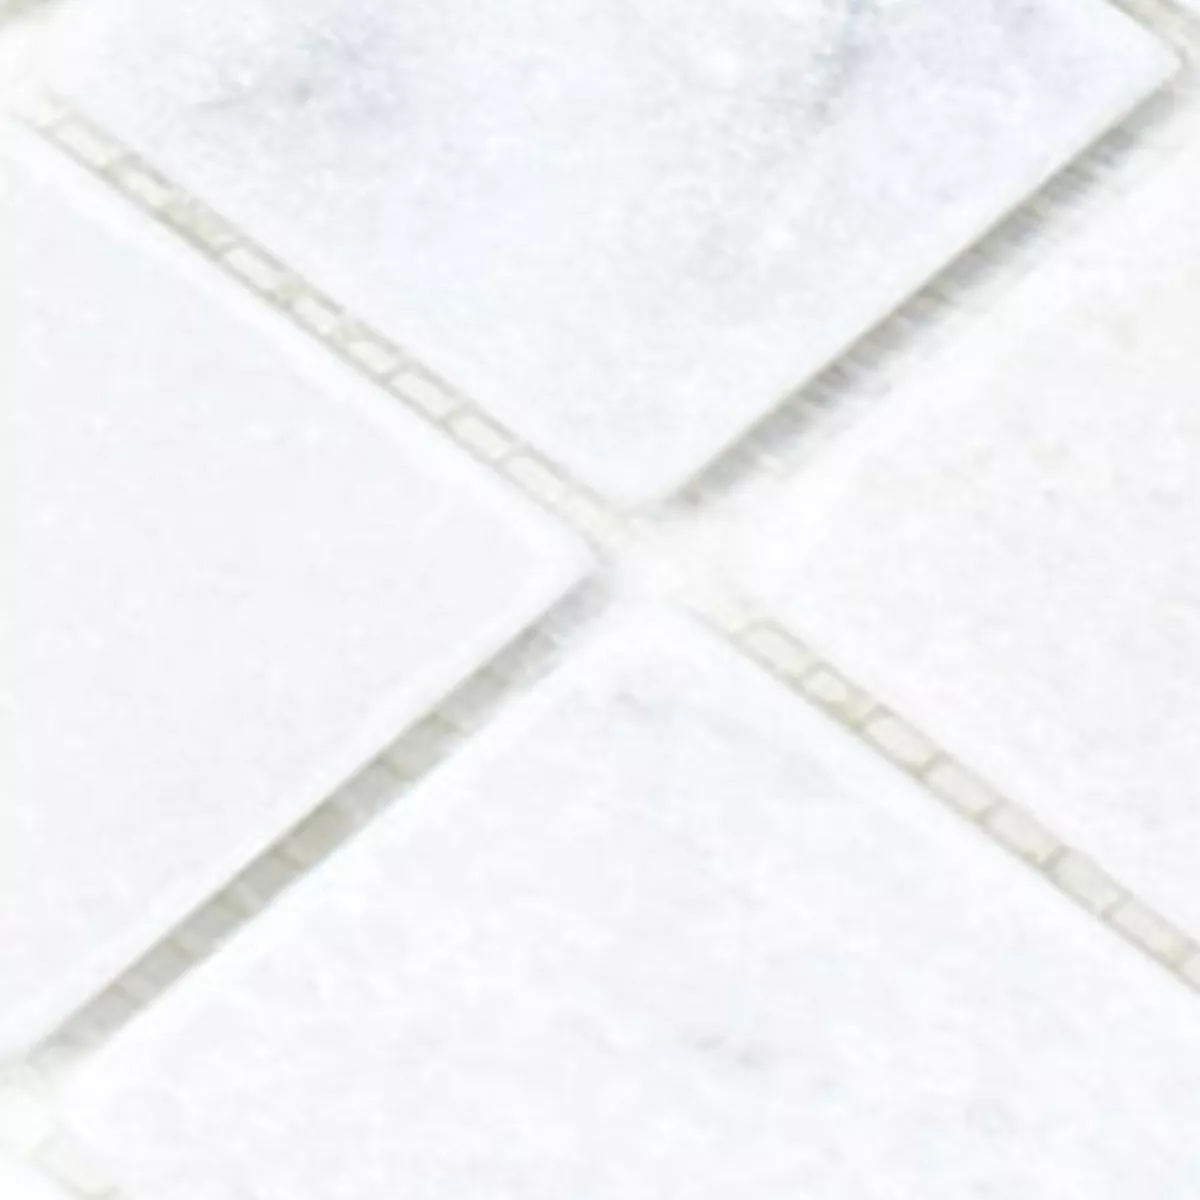 Sample Mosaic Tiles Marble Treviso White 48